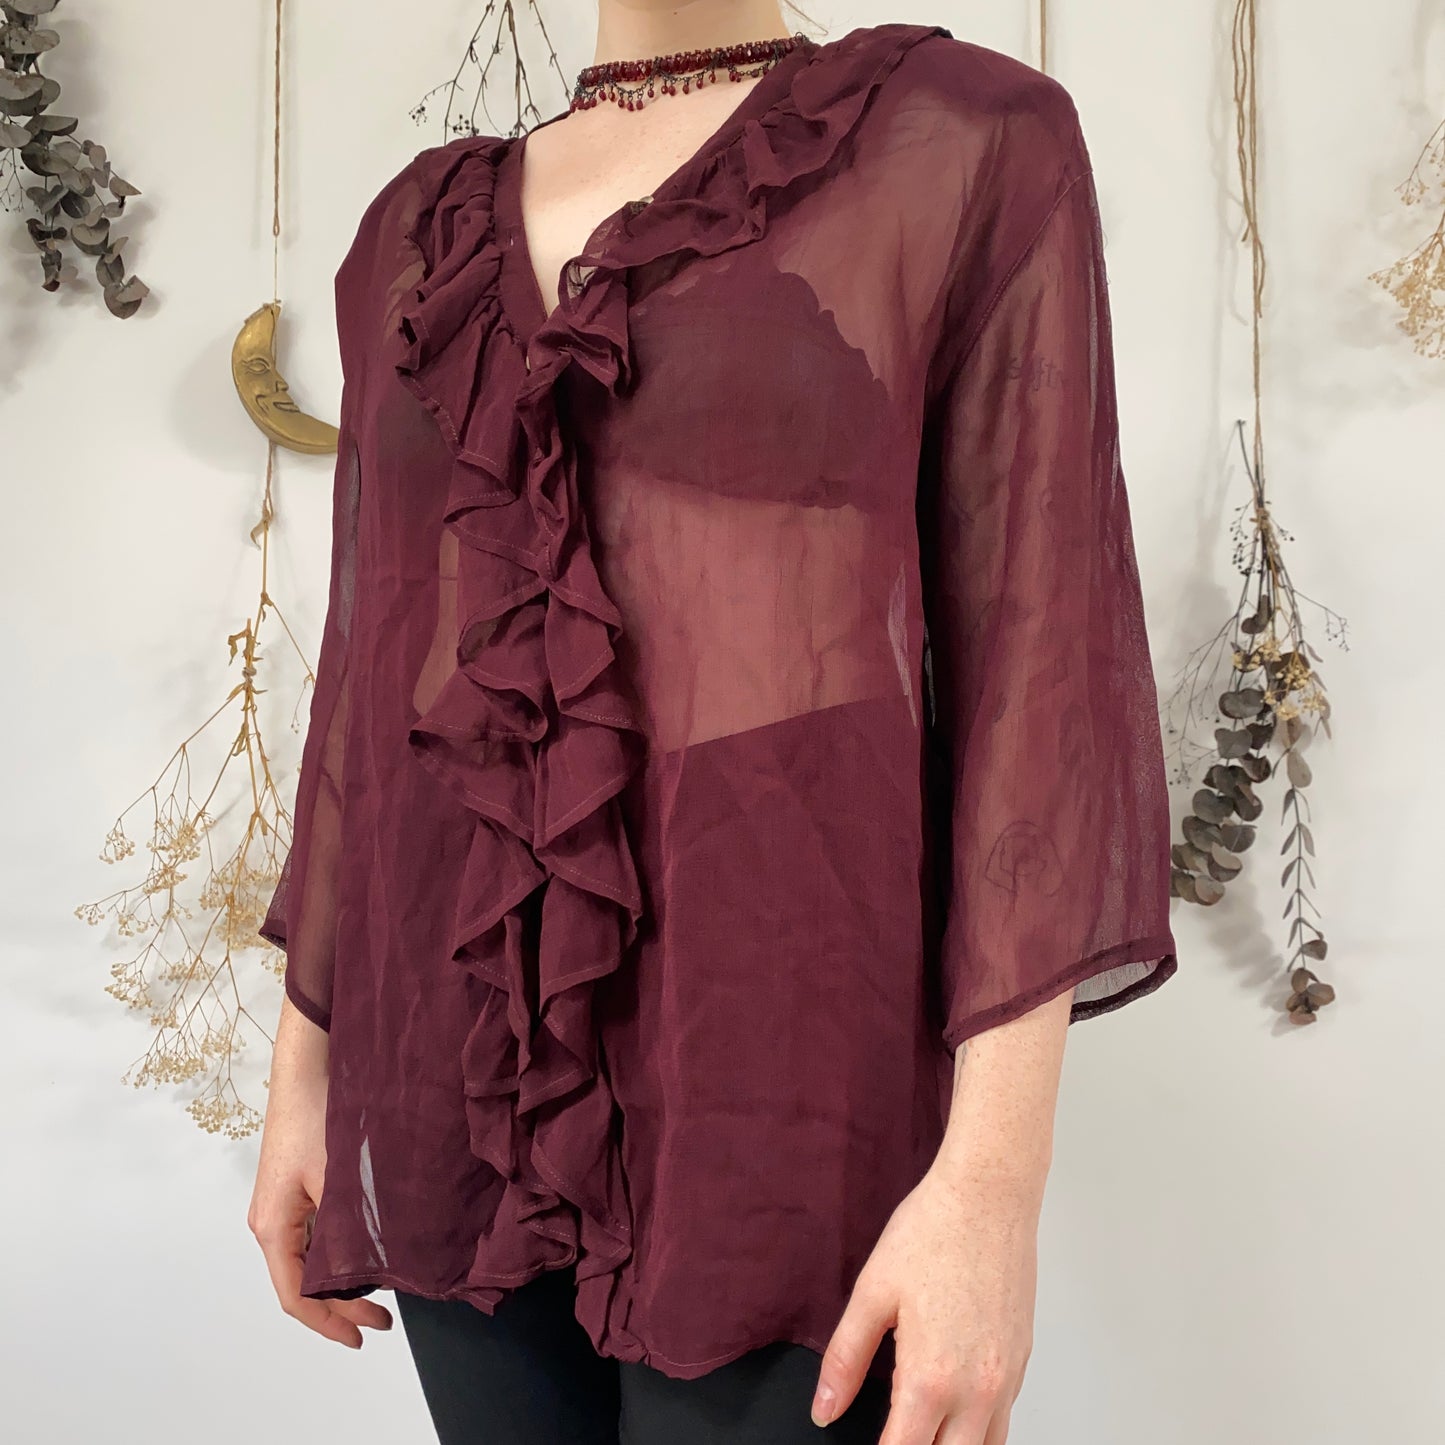 Burgundy blouse - size L/XL